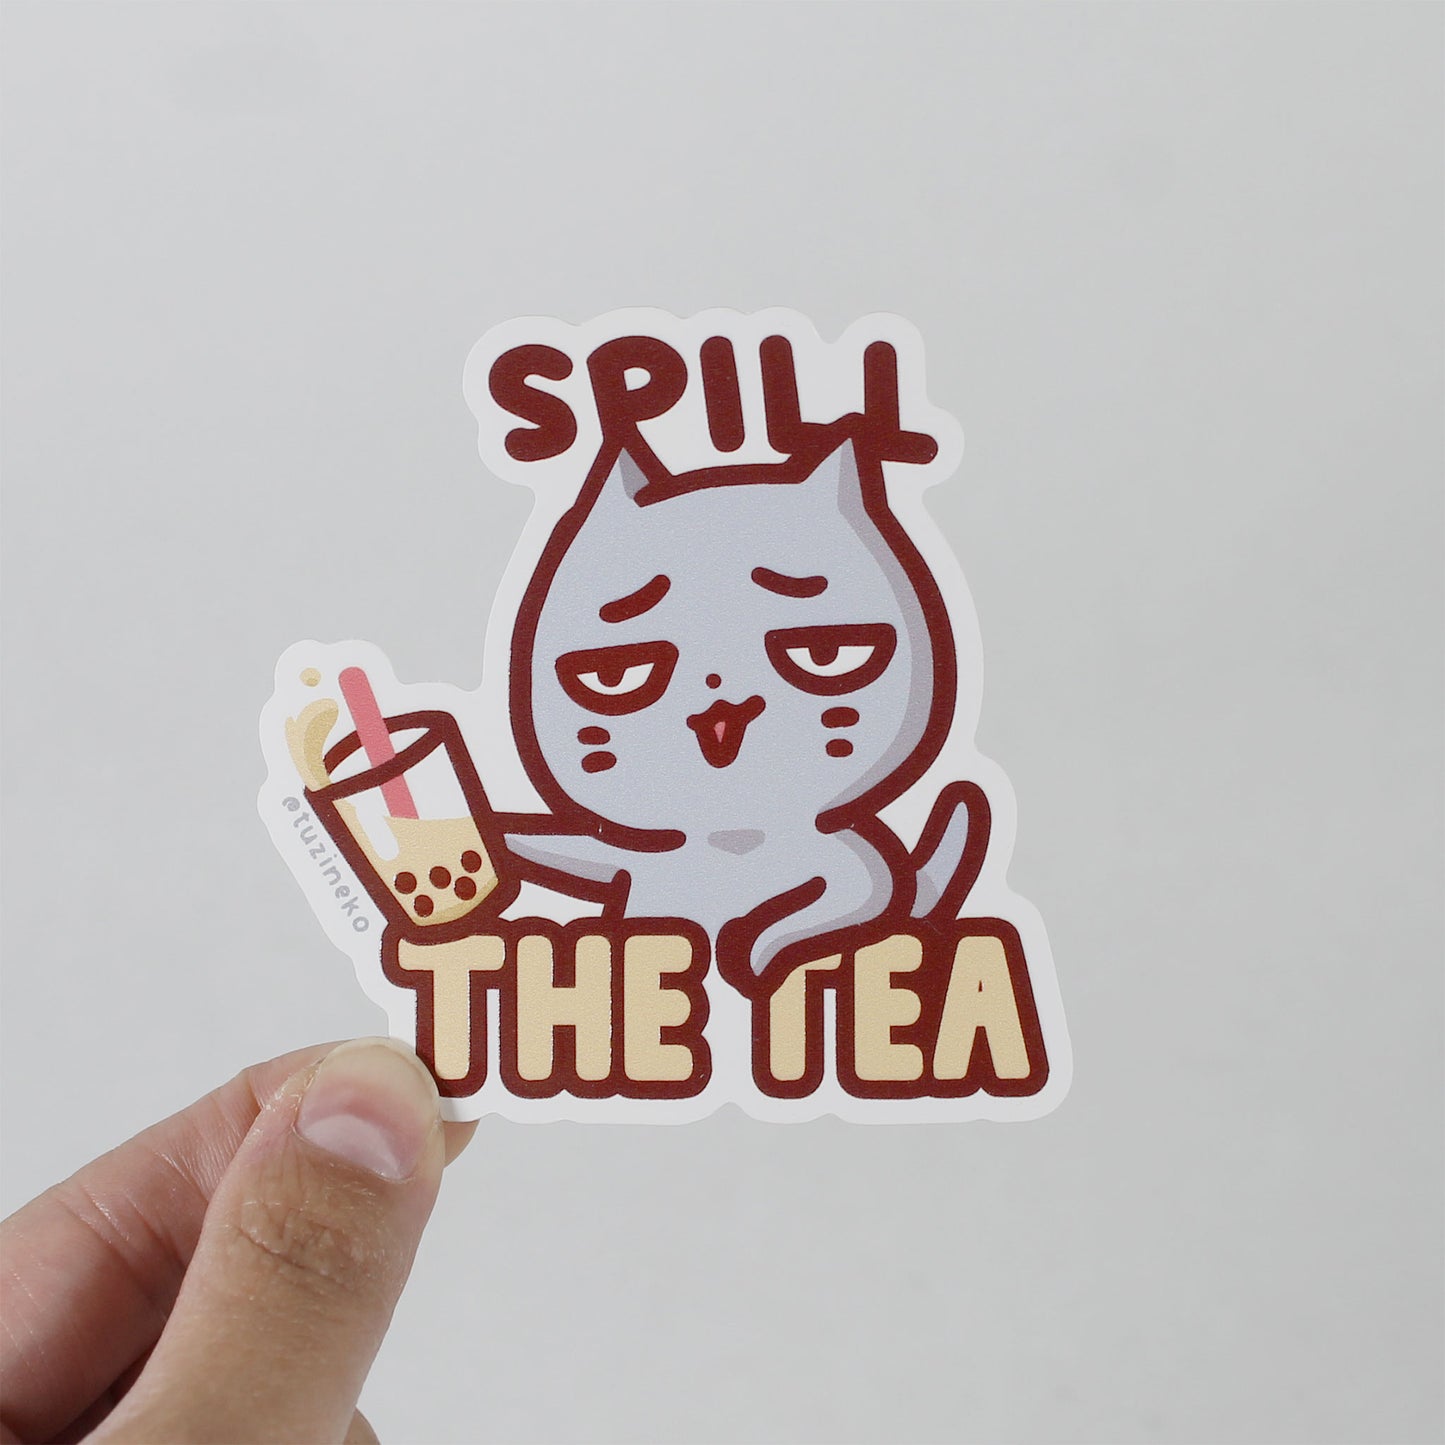 Sassy Neko "Spill The Tea" Matte Waterproof Sticker with Gloss Spot UV